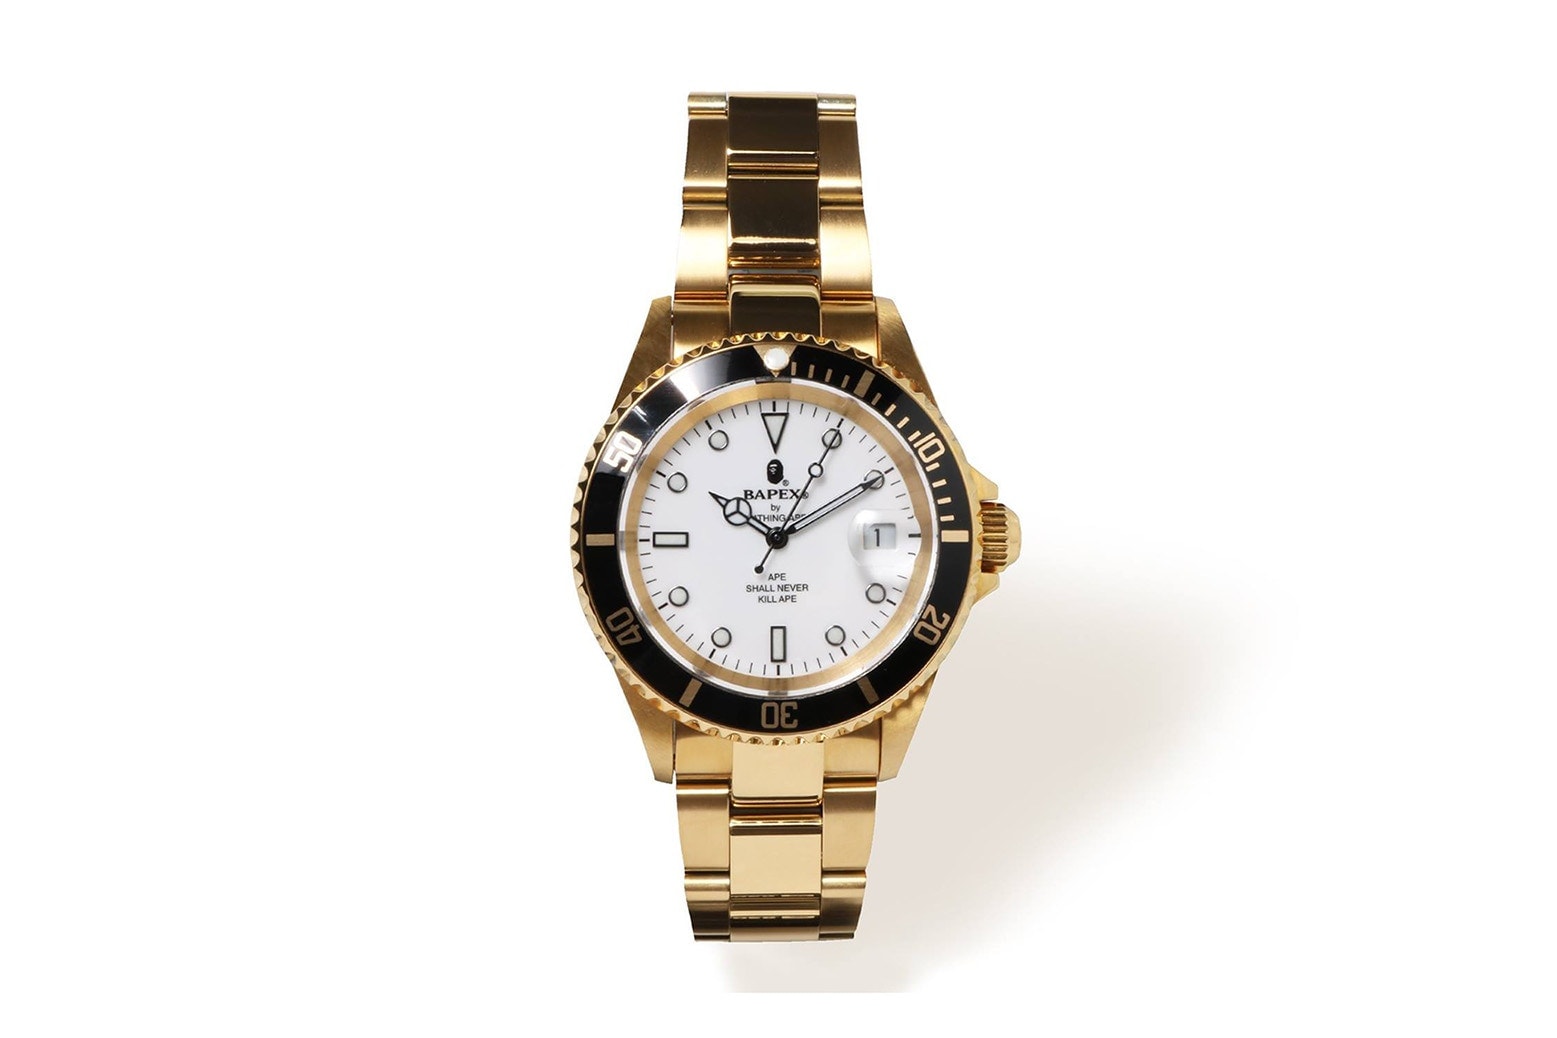 BAPE® のエレガントな腕時計シリーズ Type 1 BAPEX® に新たな3色が登場 ベイプ  A BATHING APE® ア ベイシング エイプ 時計 ウォッチ リスト 腕時計 プレゼント 男性 クリスマス ハイプ ビースト hypebeast